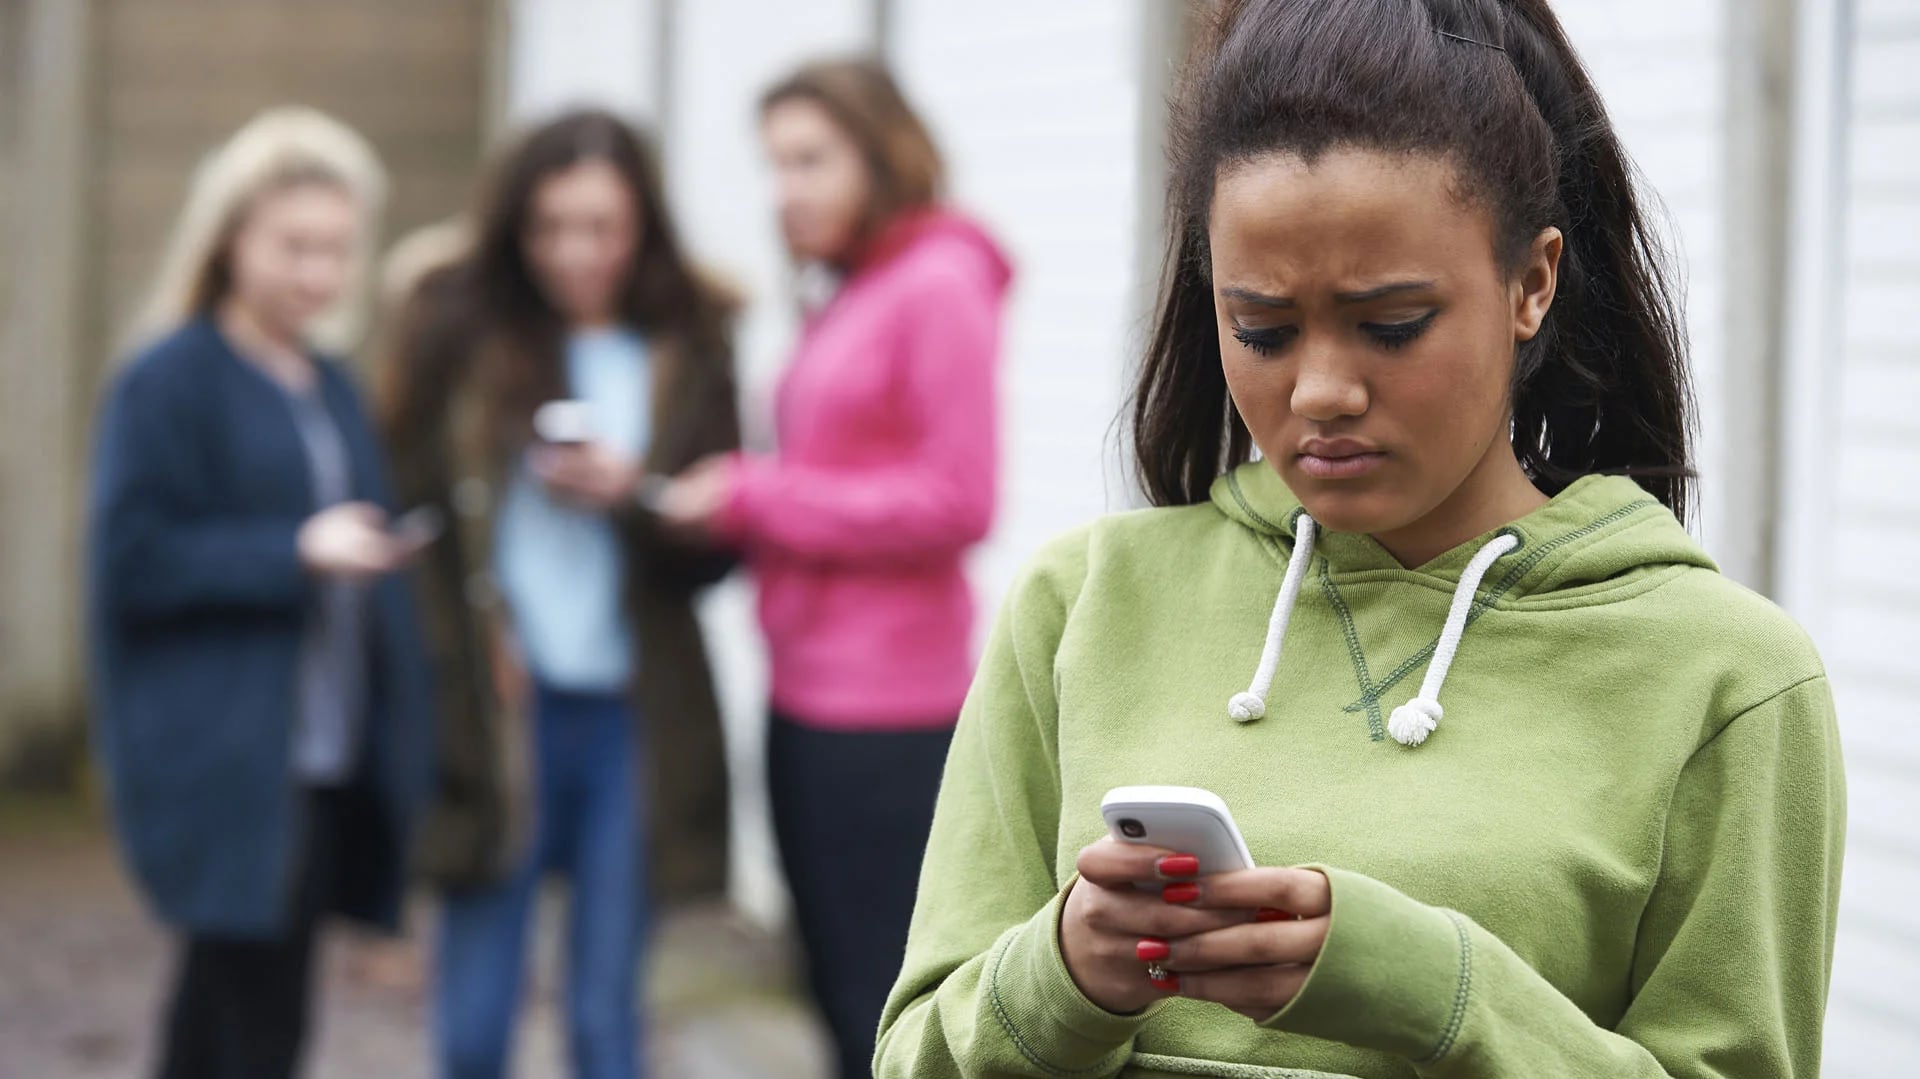 El cyberbullying es una forma de violencia psicológica a través de las herramientas y redes digitales (Shutterstock)